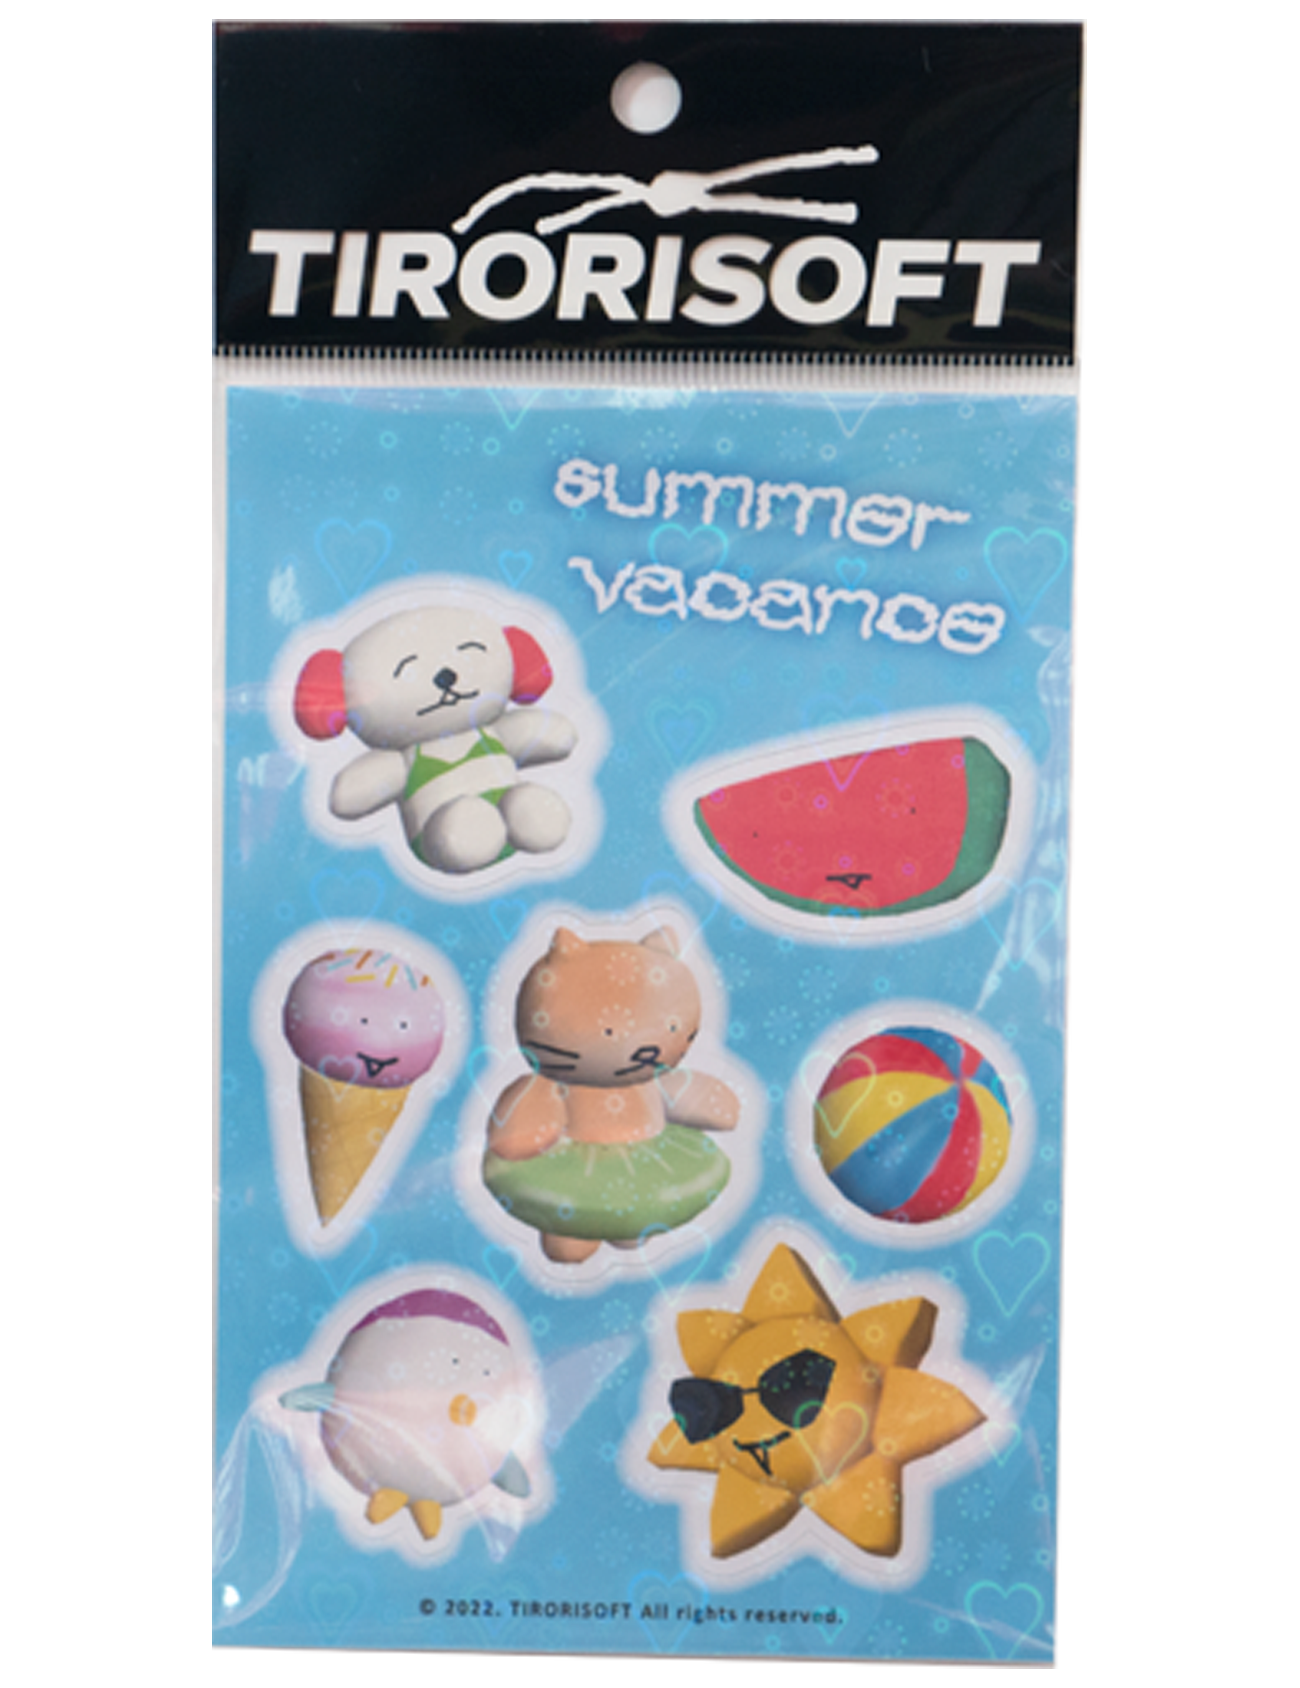 Summer vacance (sticker)